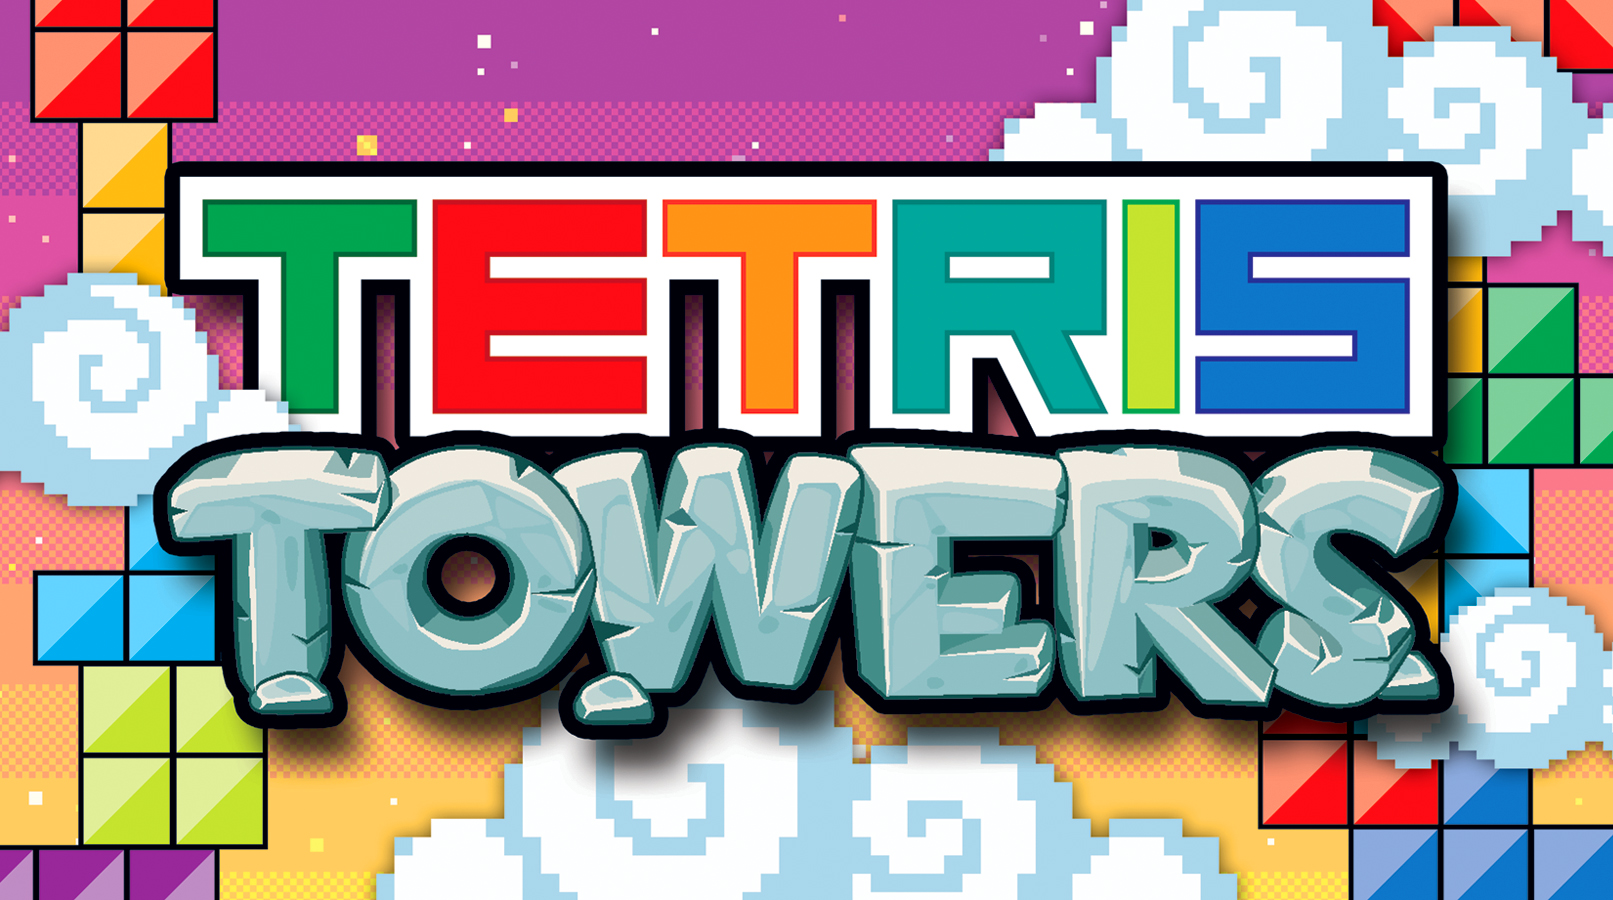 Tetris Towers